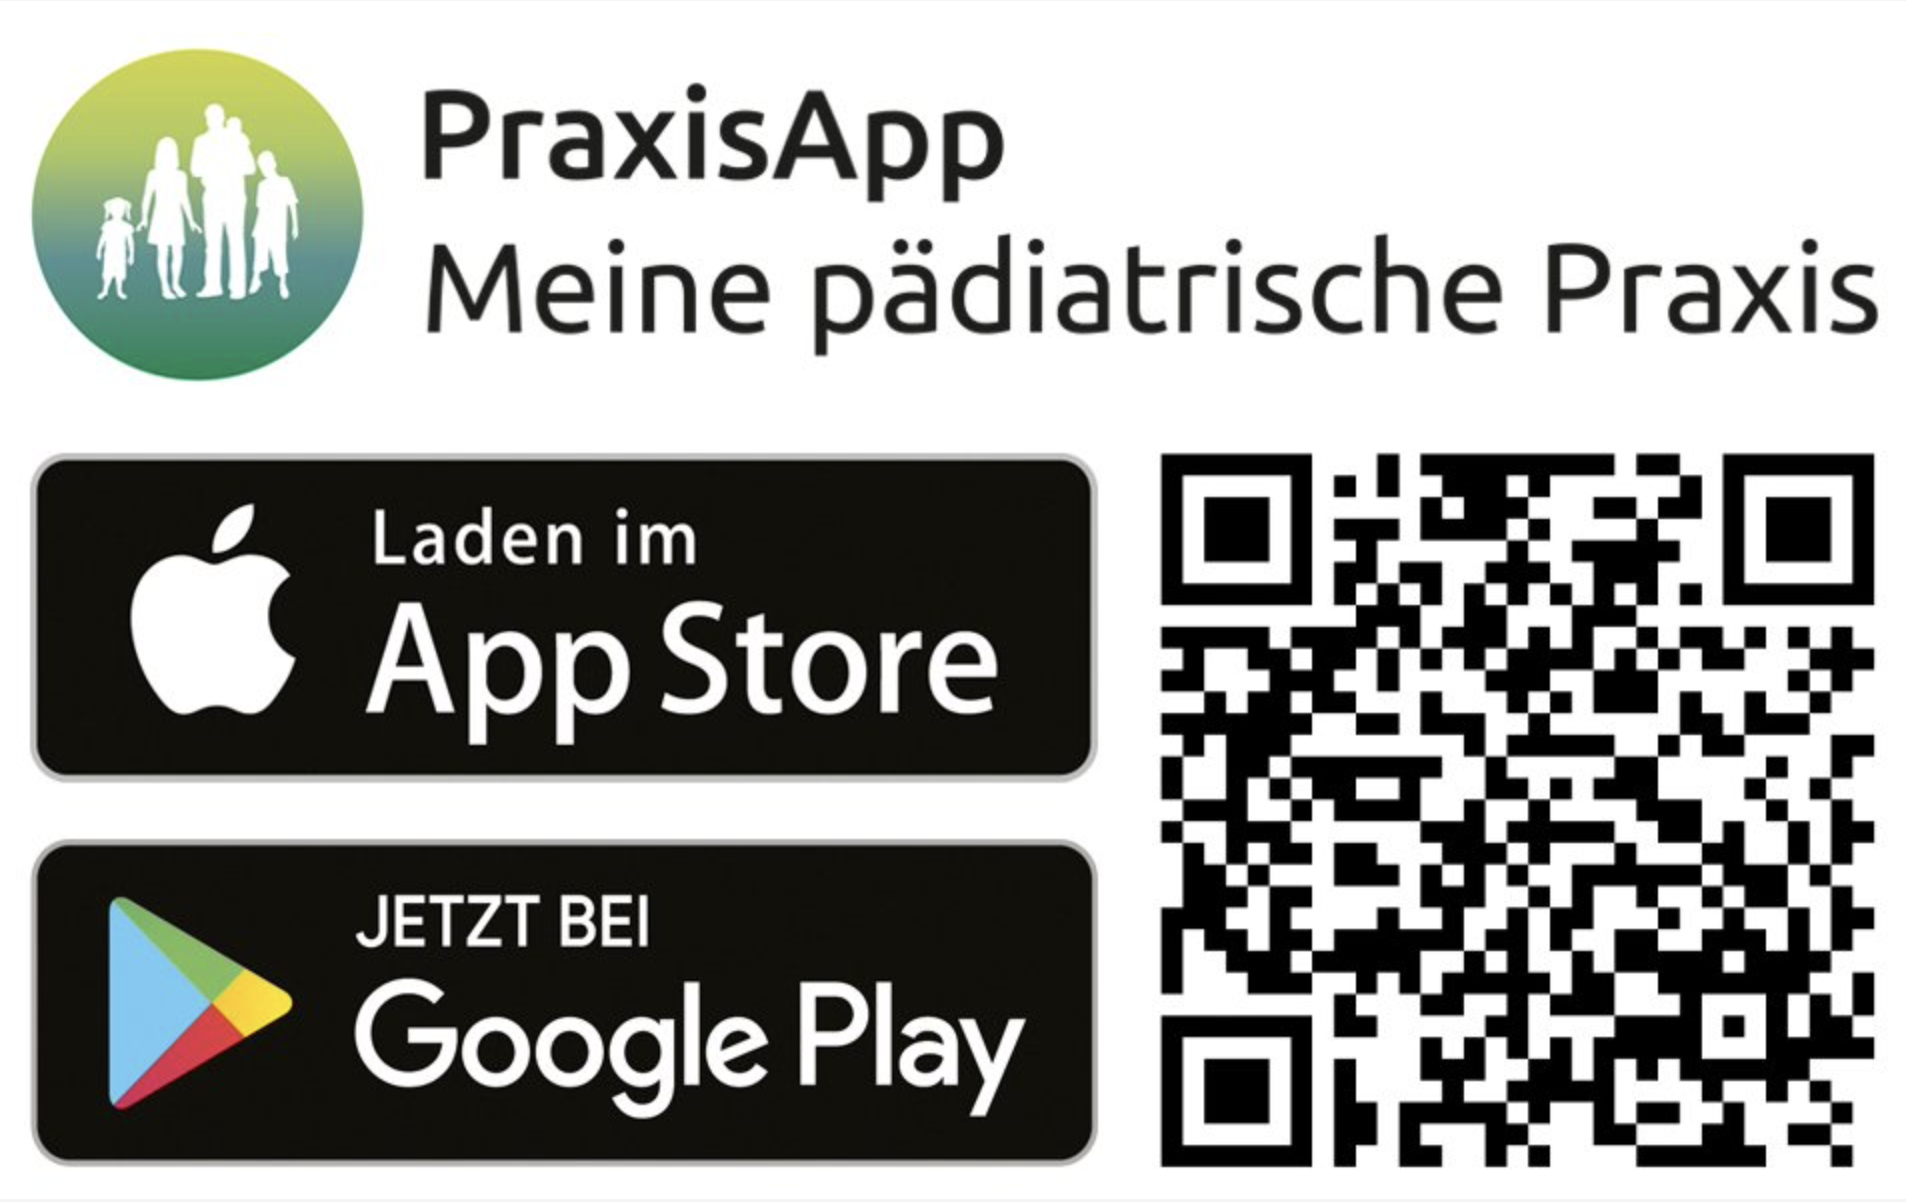 PraxisApp Link